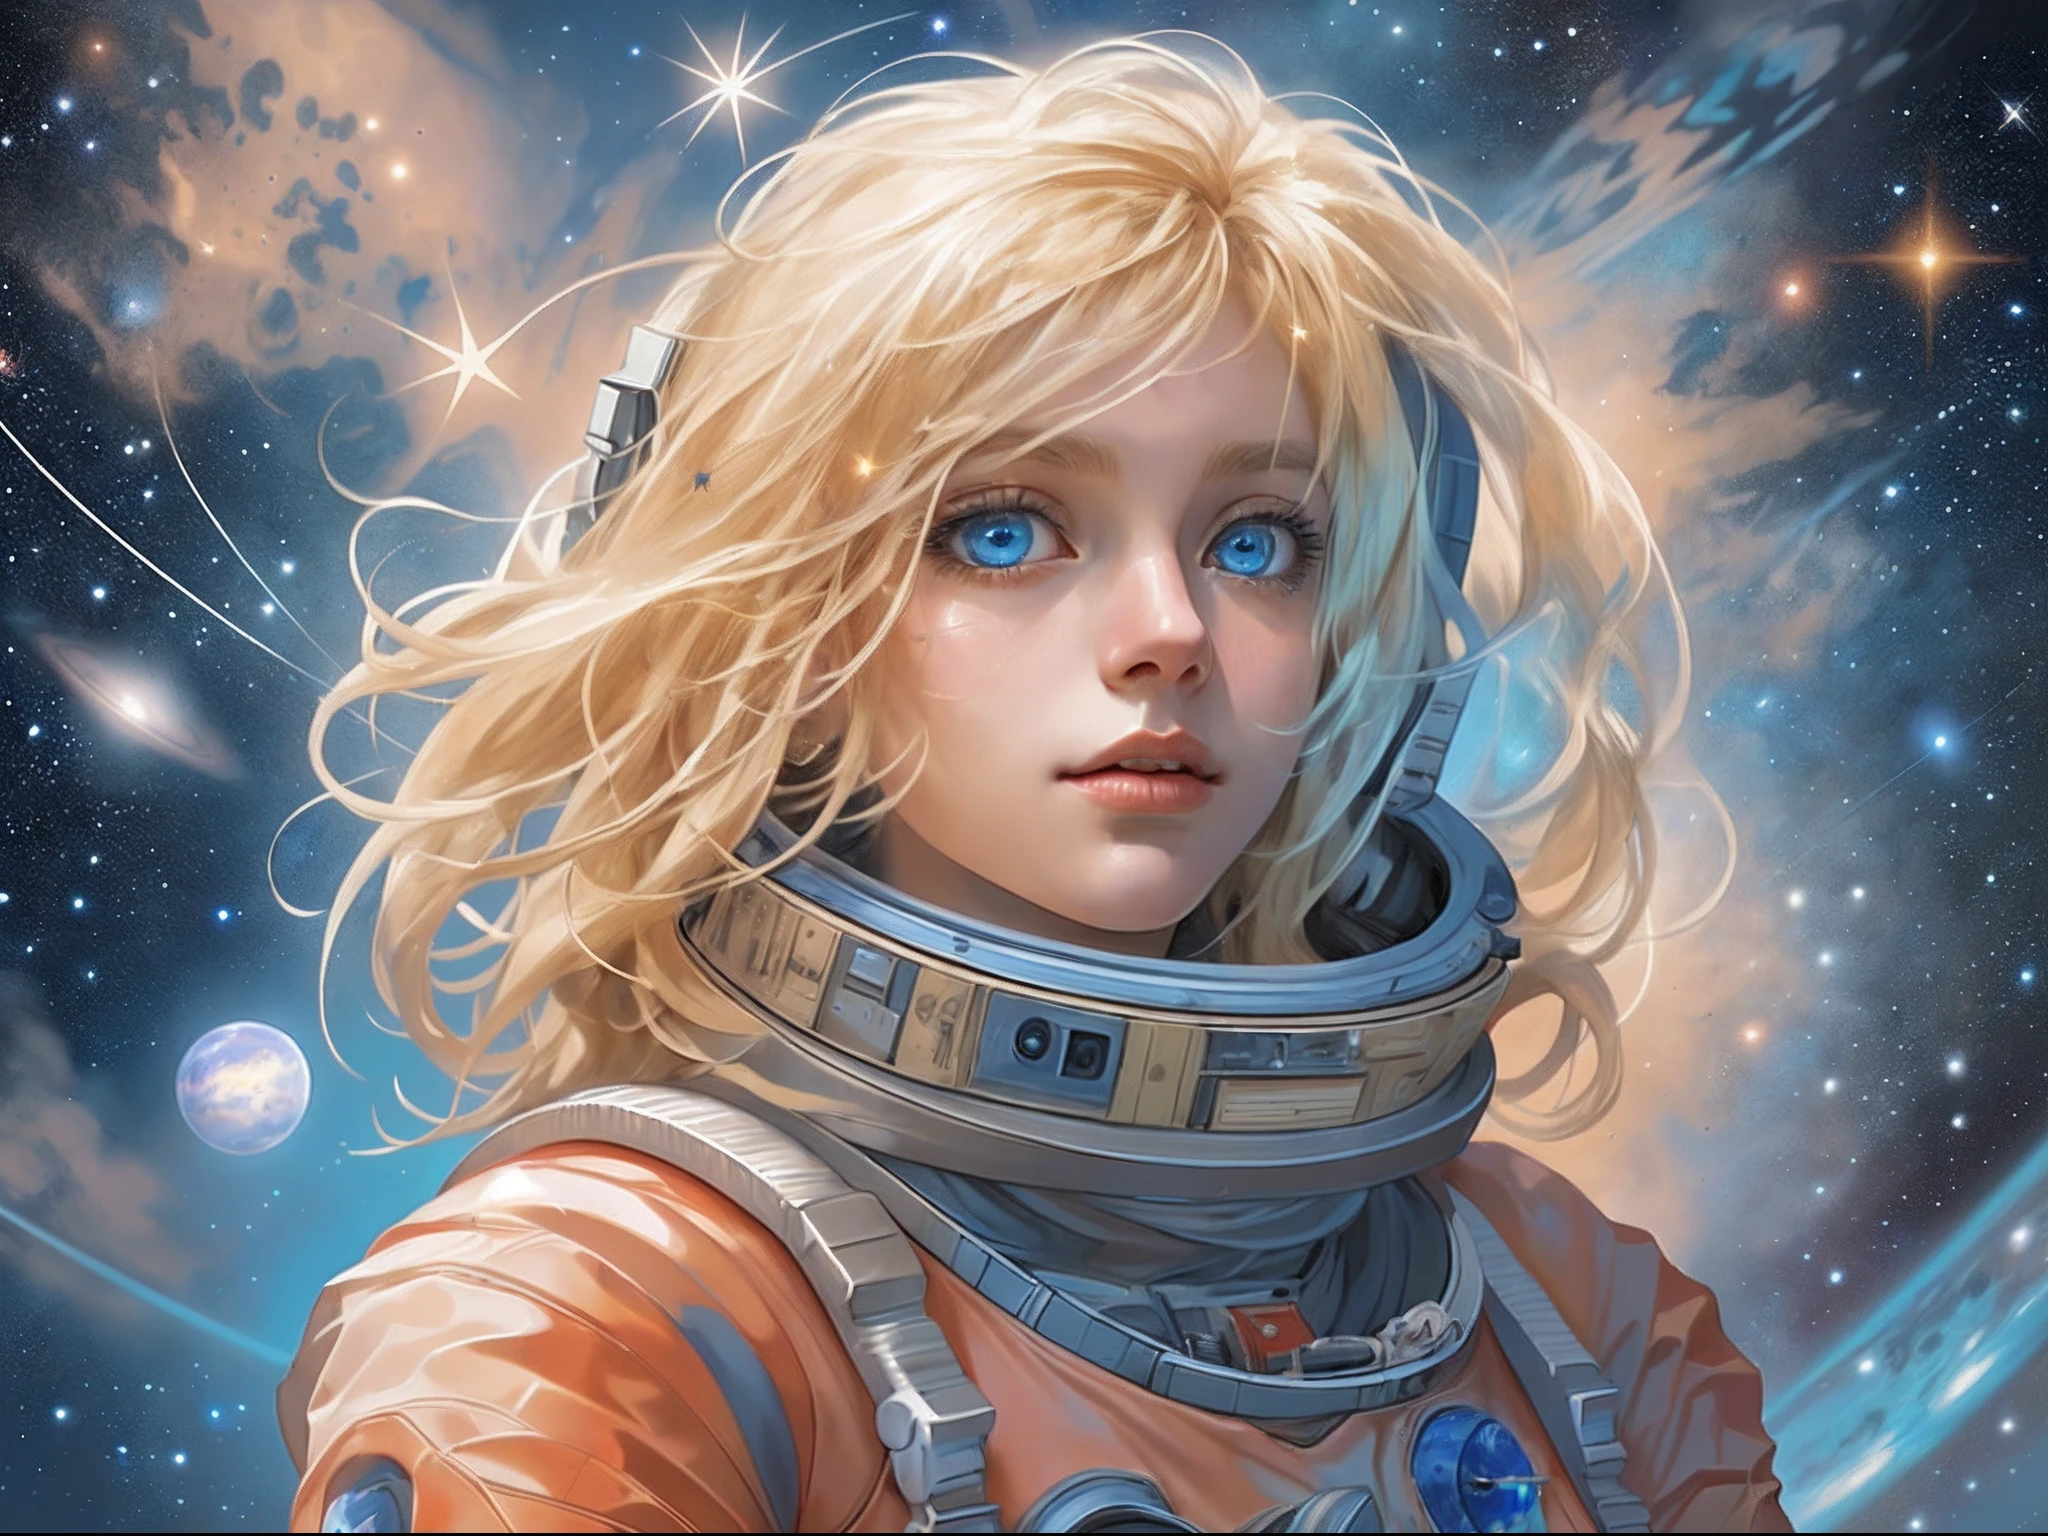 有一幅插图，一个仙女宇航员站在火星上，望向太空，看到浩瀚的星星和太空, 金发, 长发, 蓝眼睛, 超细致的脸部, 太空和星星作为背景, 无限感,